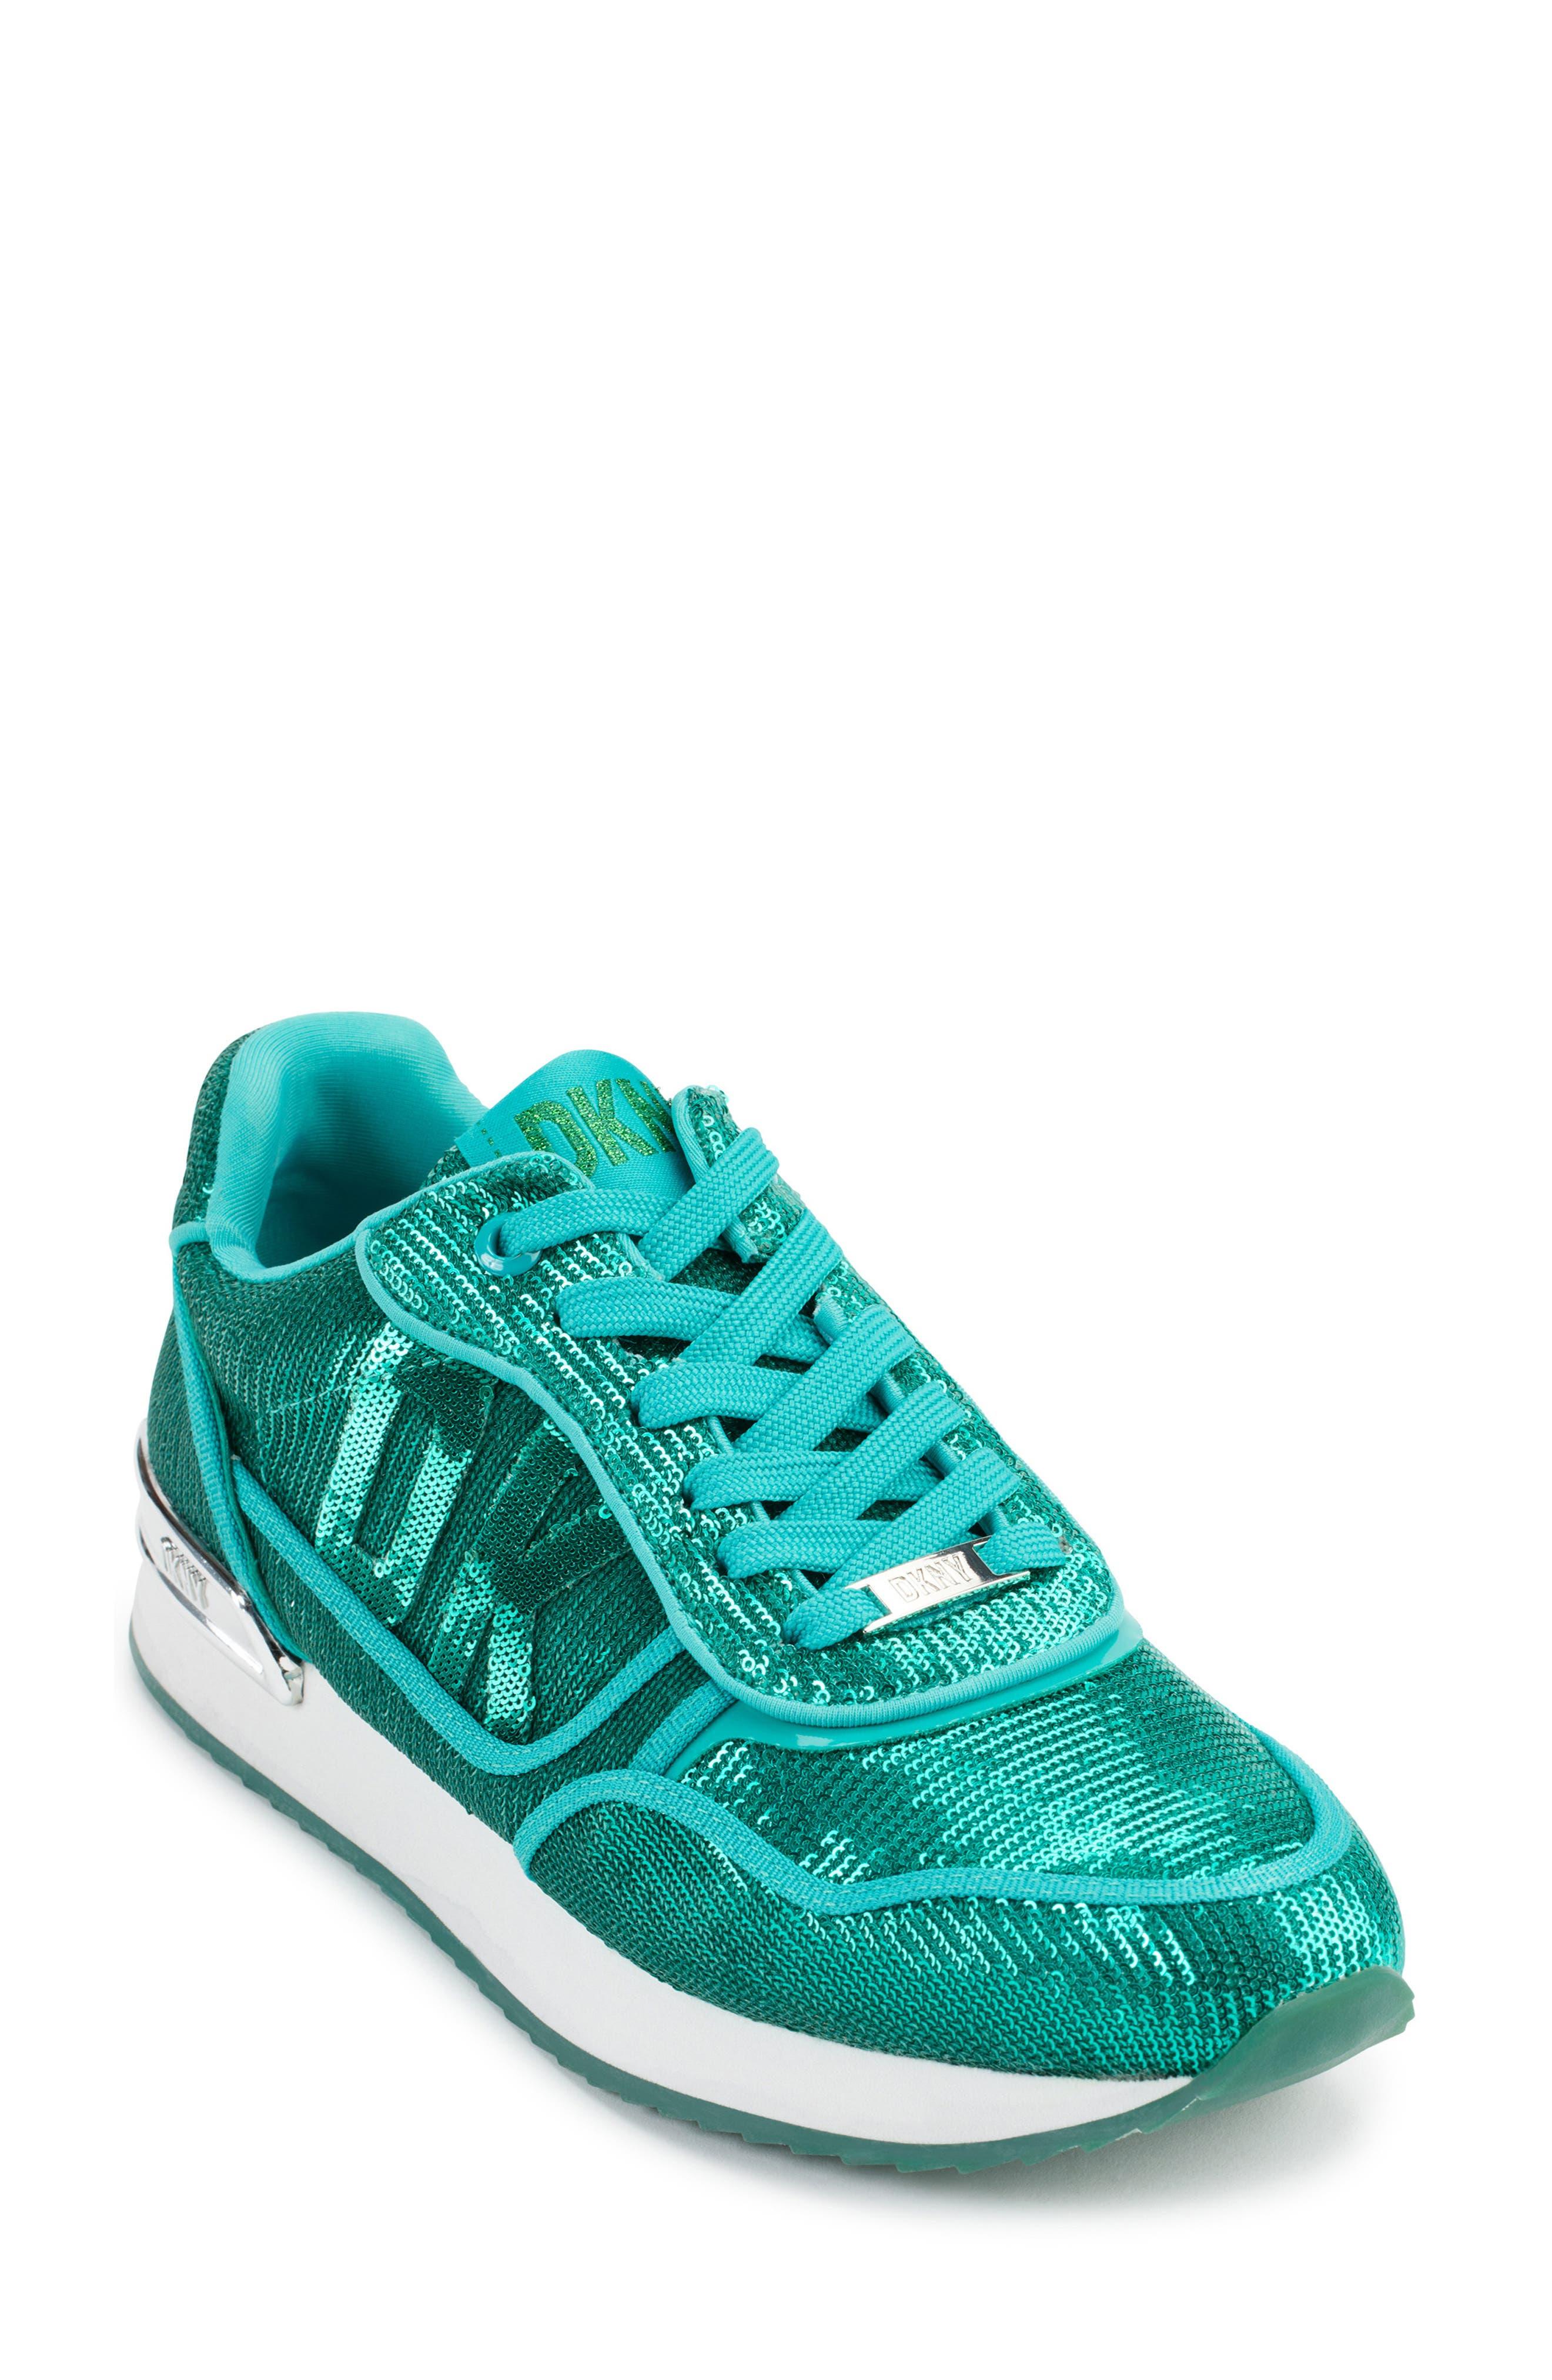 DKNY Mabyn Sequin Sneaker in Blue | Lyst